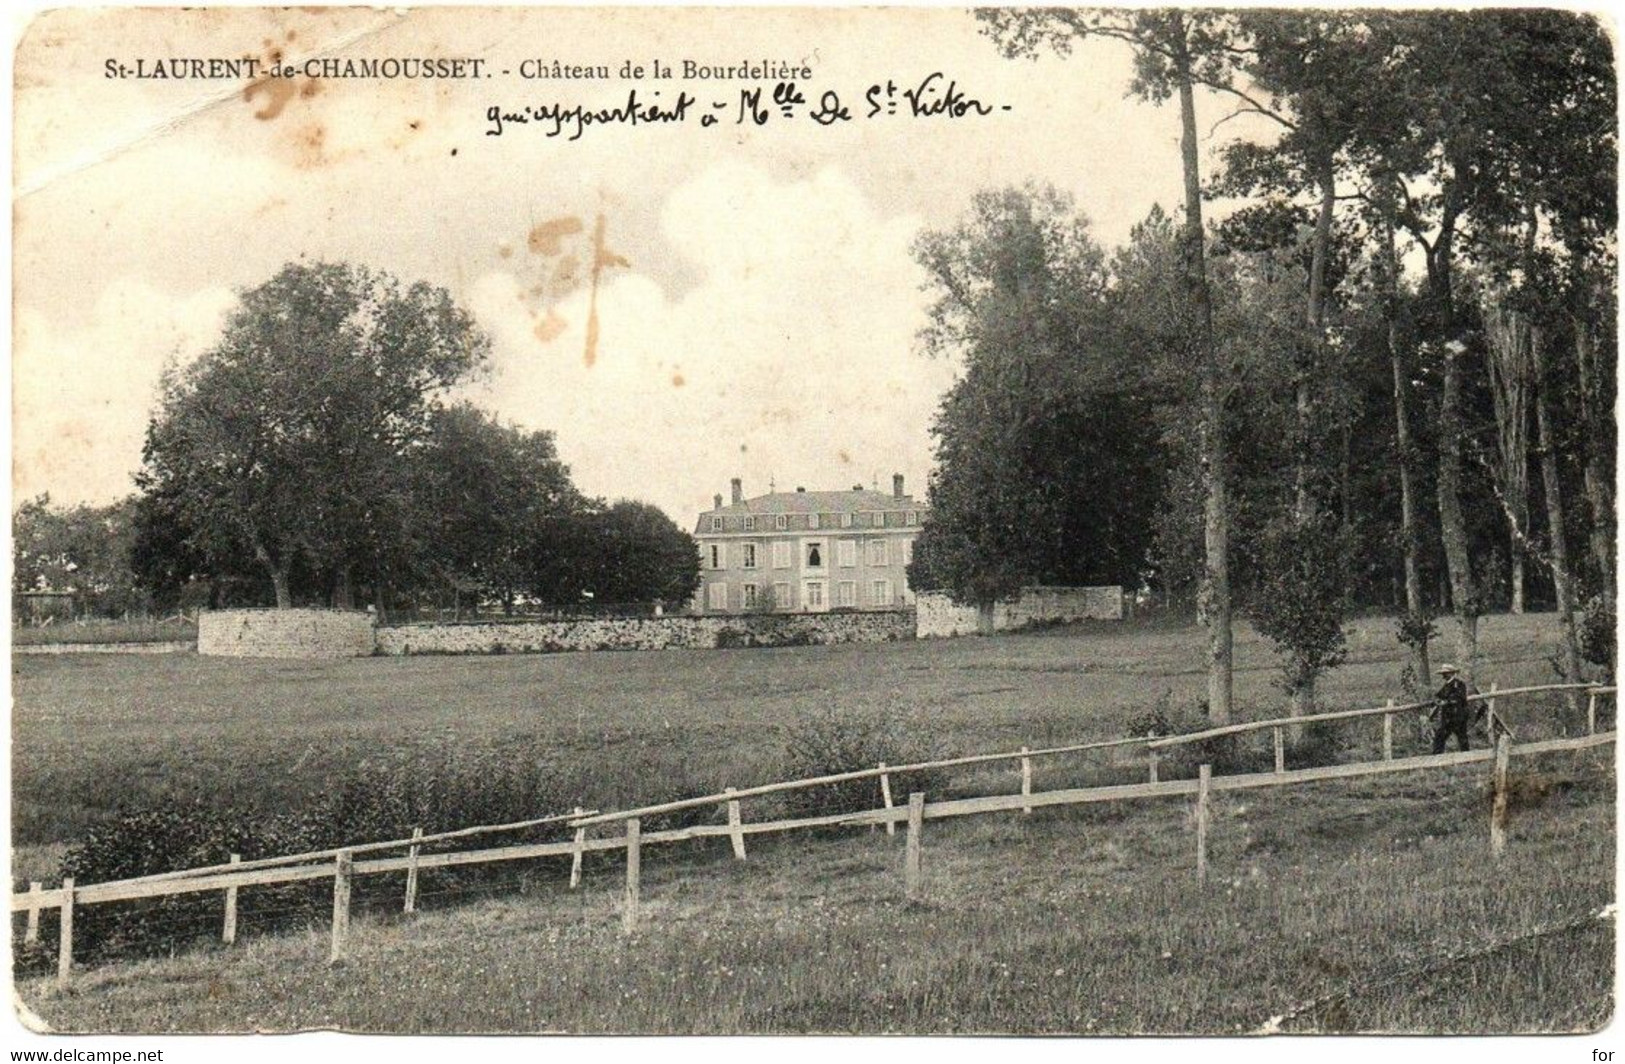 Rhône : SAINT-LAURENT-de-CHAMOUSSET : Château  De La Bourdelière : Propriétaire - Melle De St. Victor - Saint-Laurent-de-Chamousset